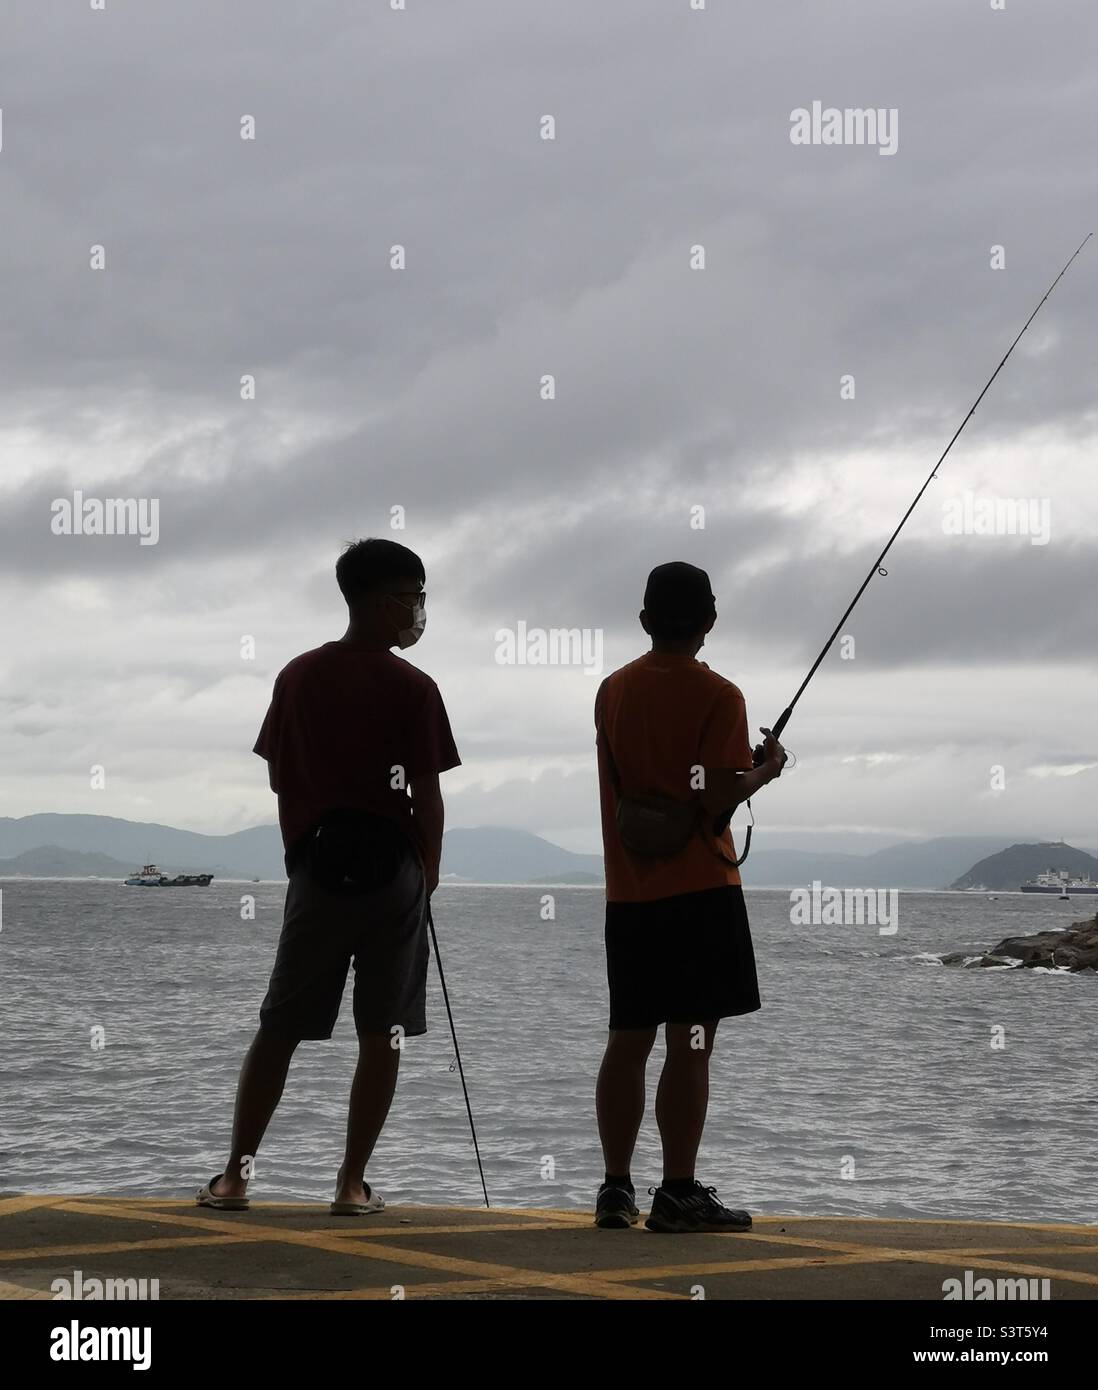 Local men fishing from the Yung Shue Wan pier on Lamma island, Hong Kong. Stock Photo